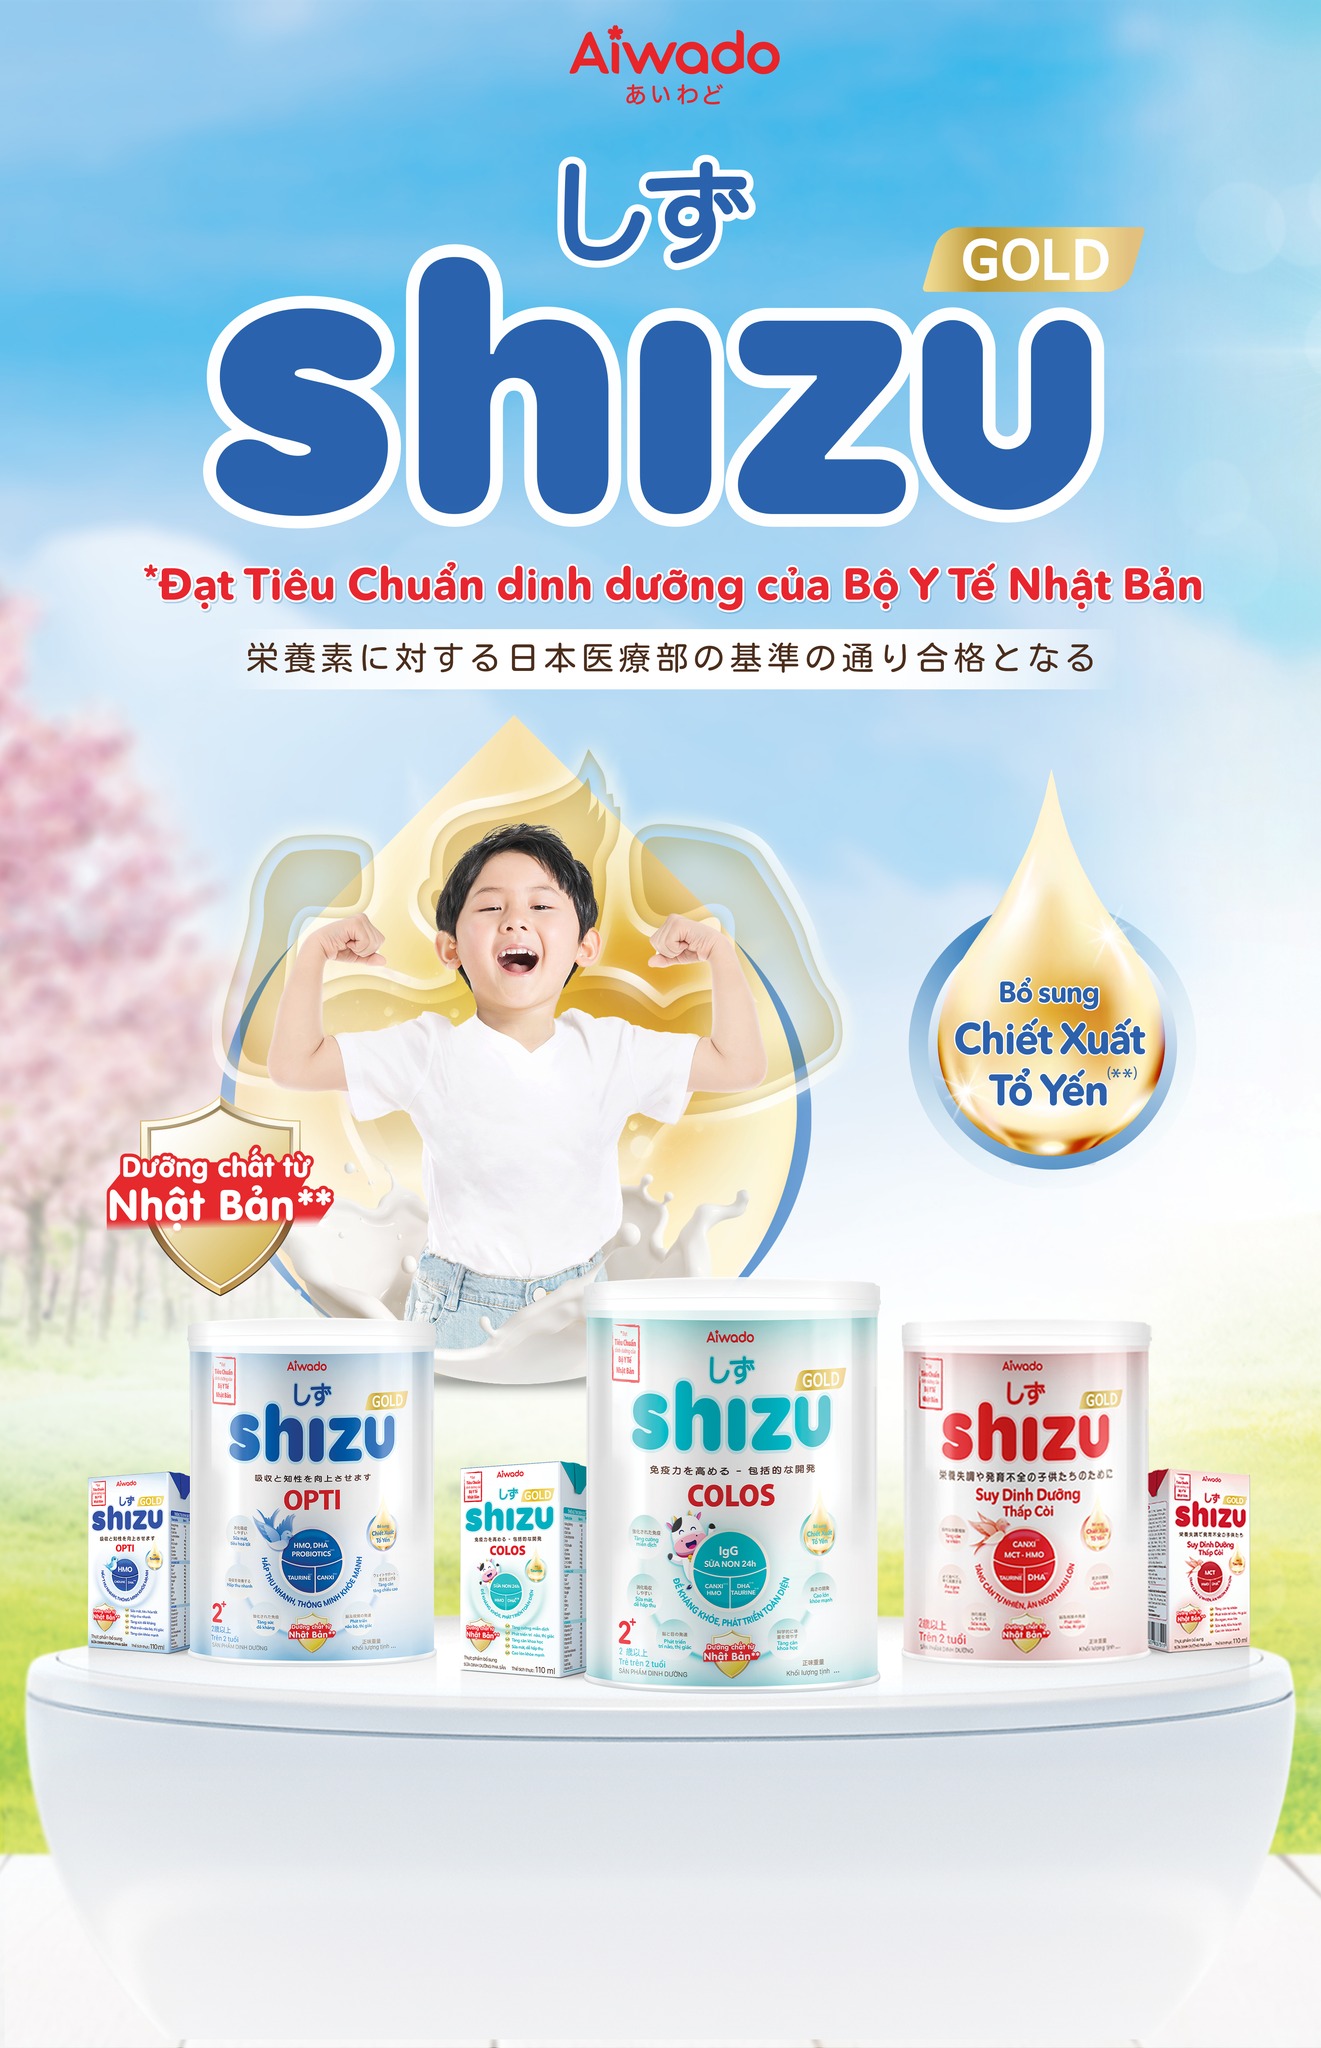 CTKM Sữa Shizu “ Đạt Tiêu chuẩn dinh dưỡng của Bộ Y Tế Nhật Bản ” 1